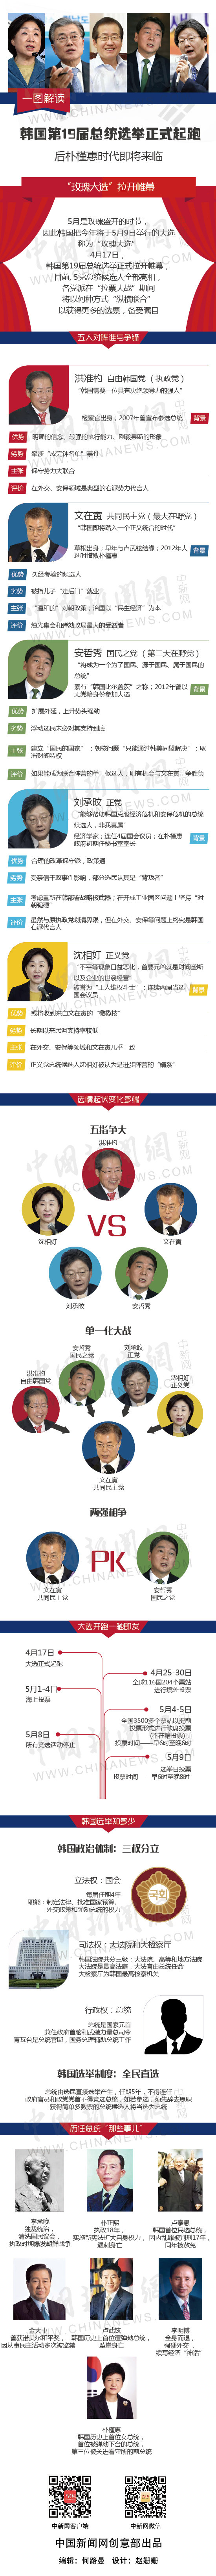 一图看懂：韩国大选五强争锋 谁能入主青瓦台？